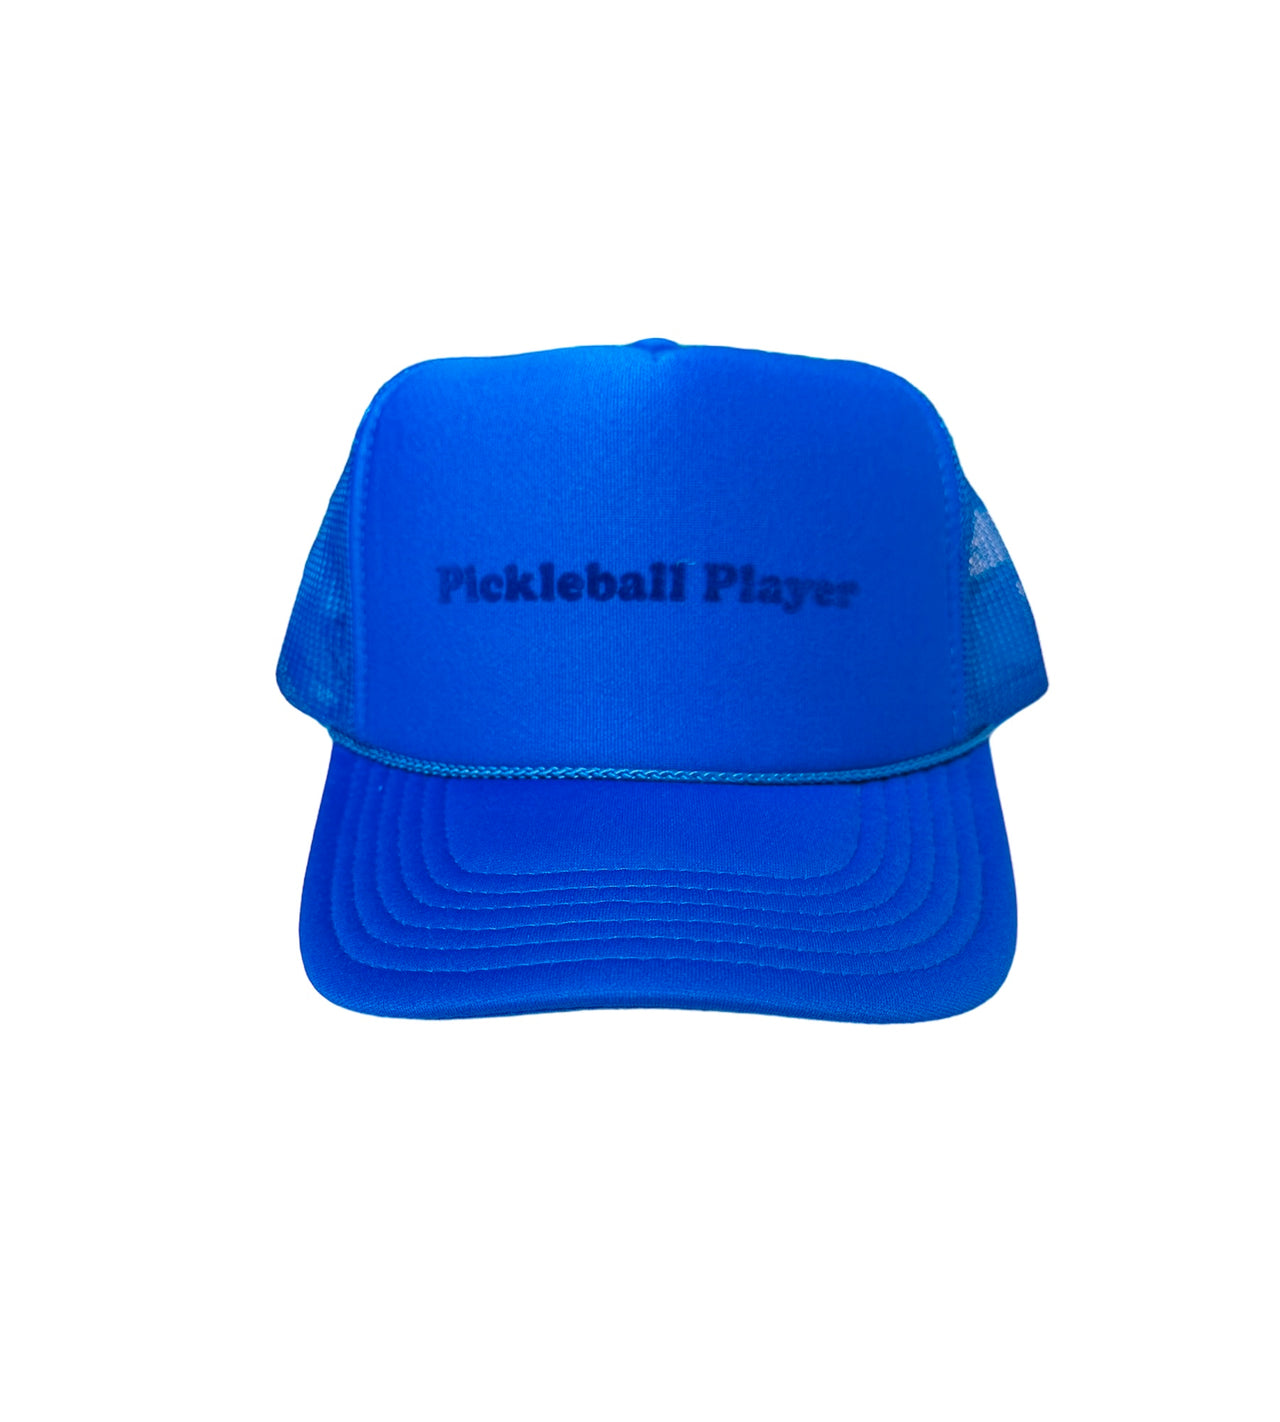 T.O.T. Trucker - Pickleball Player - (Blue on Blue)